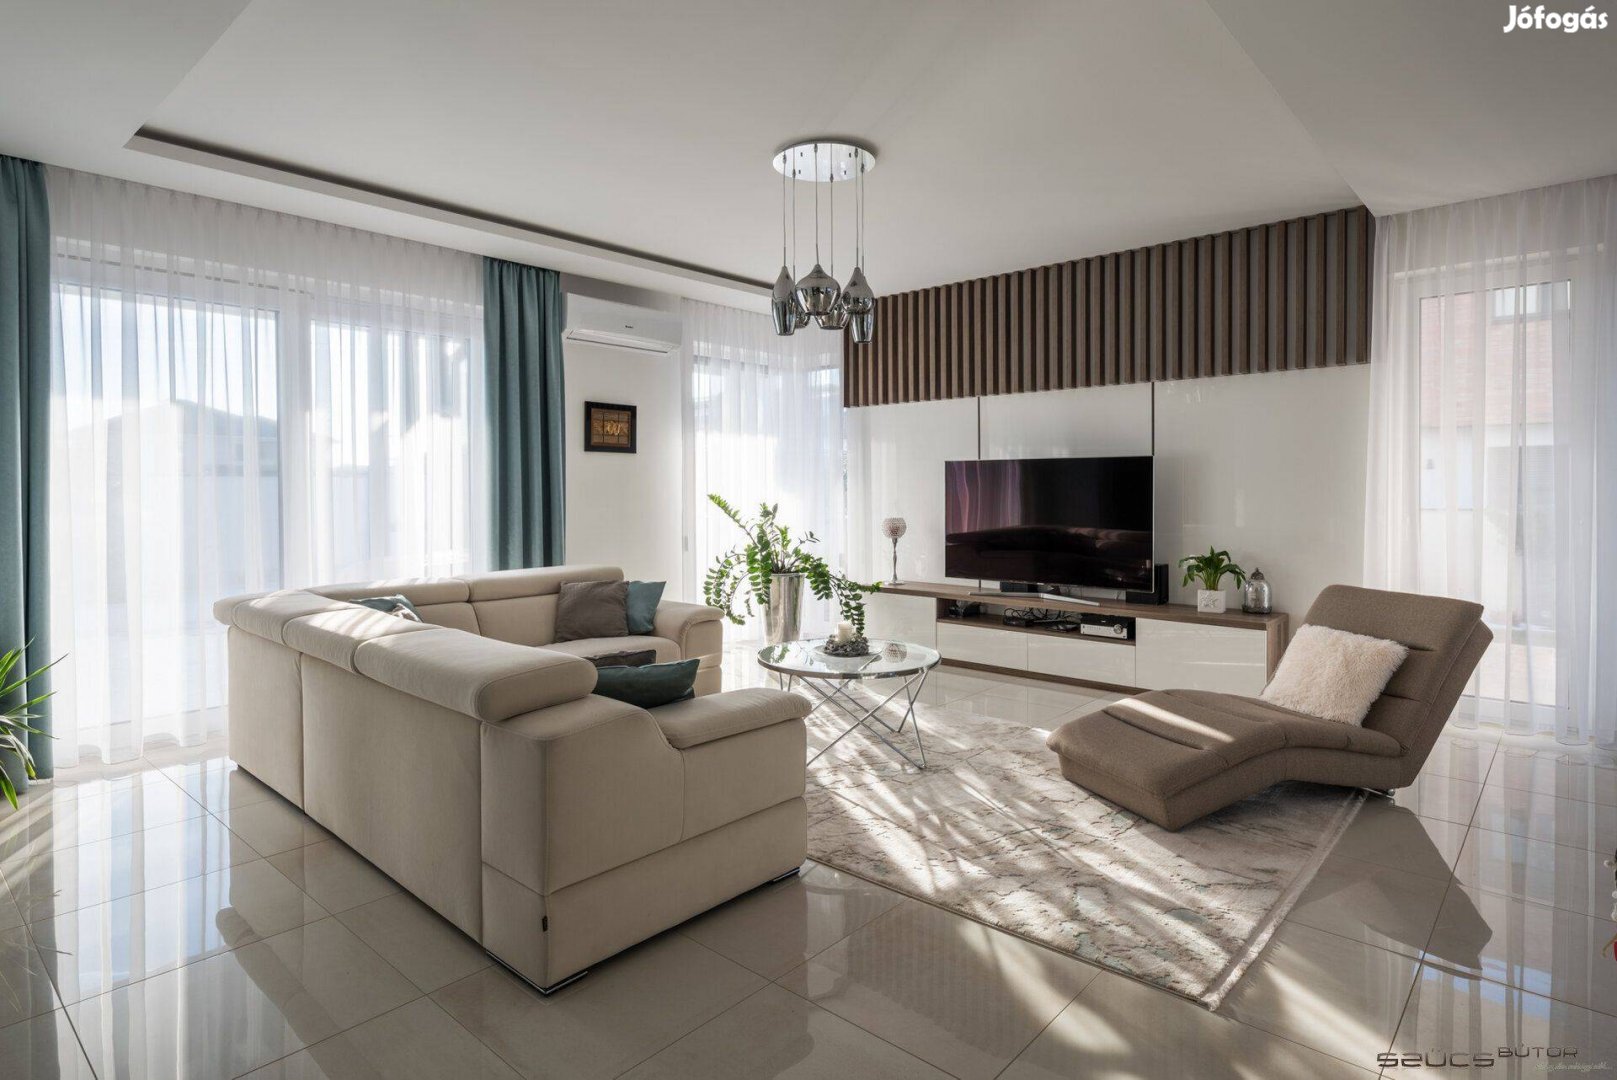 Székesfehérvár-Kisfaludon eladó 4 szoba+ nappalis újépítésű családi há